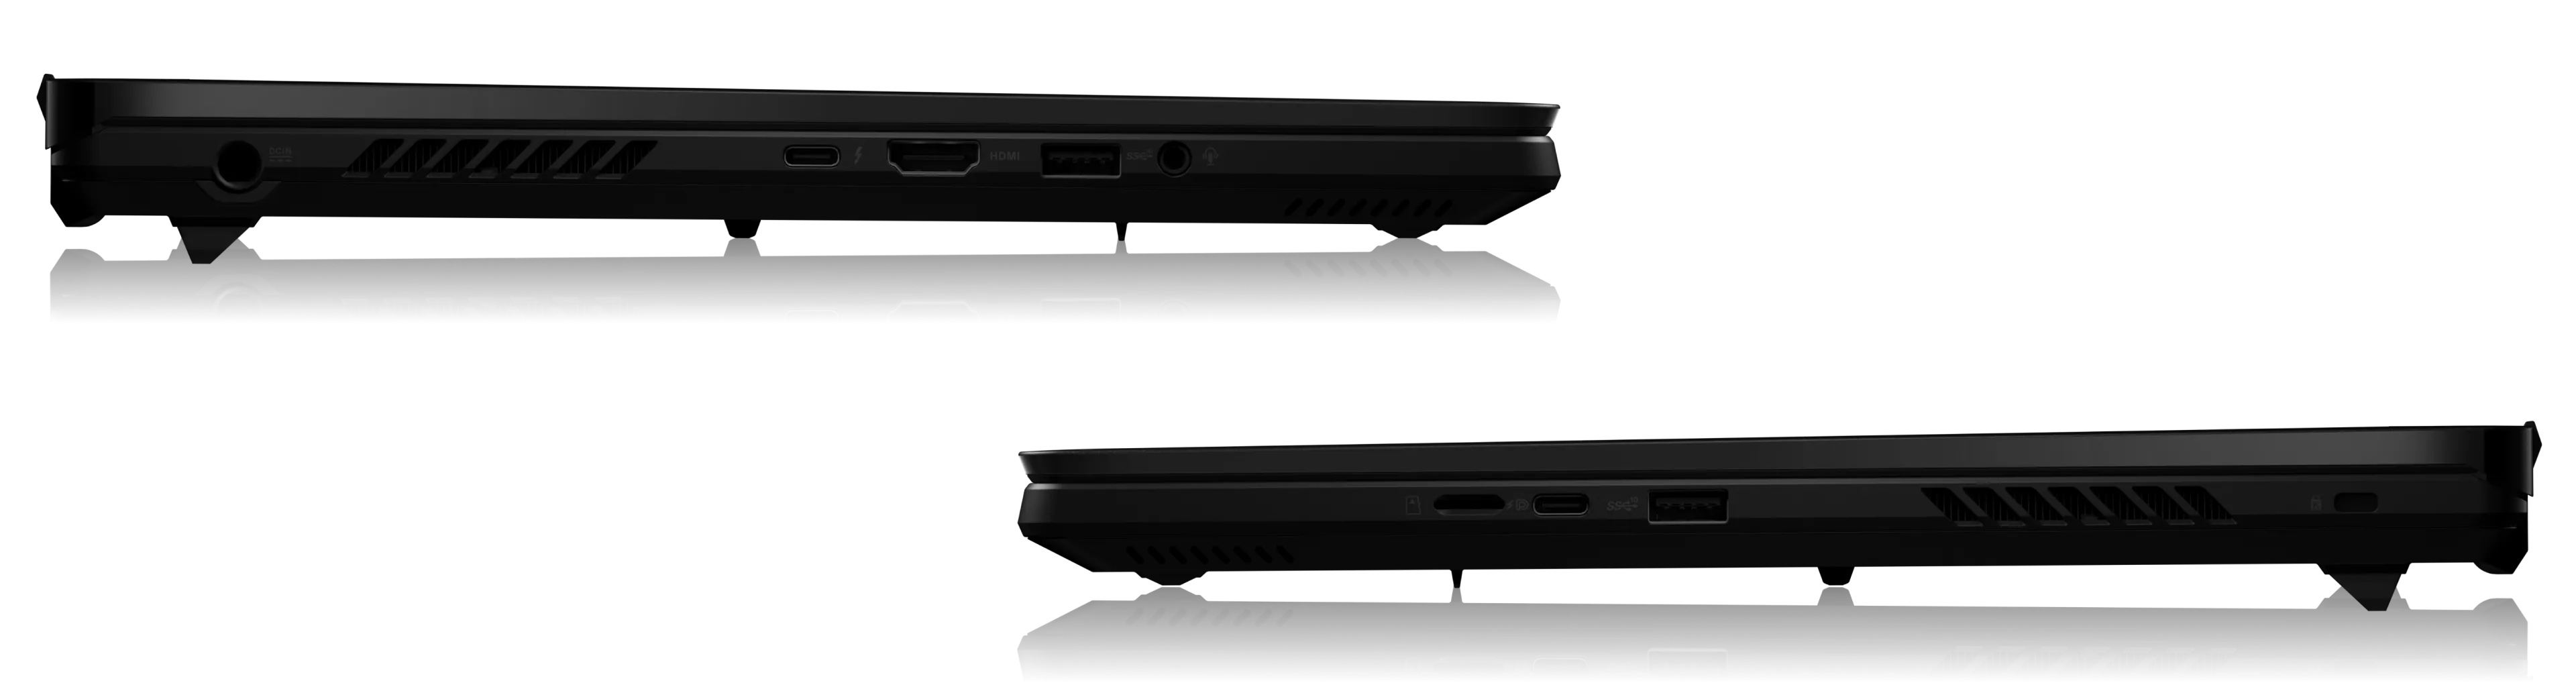 Ноутбук ROG Zephyrus M16 показан в профиль слева и справа с обозначением всех его интерфейсных разъемов.